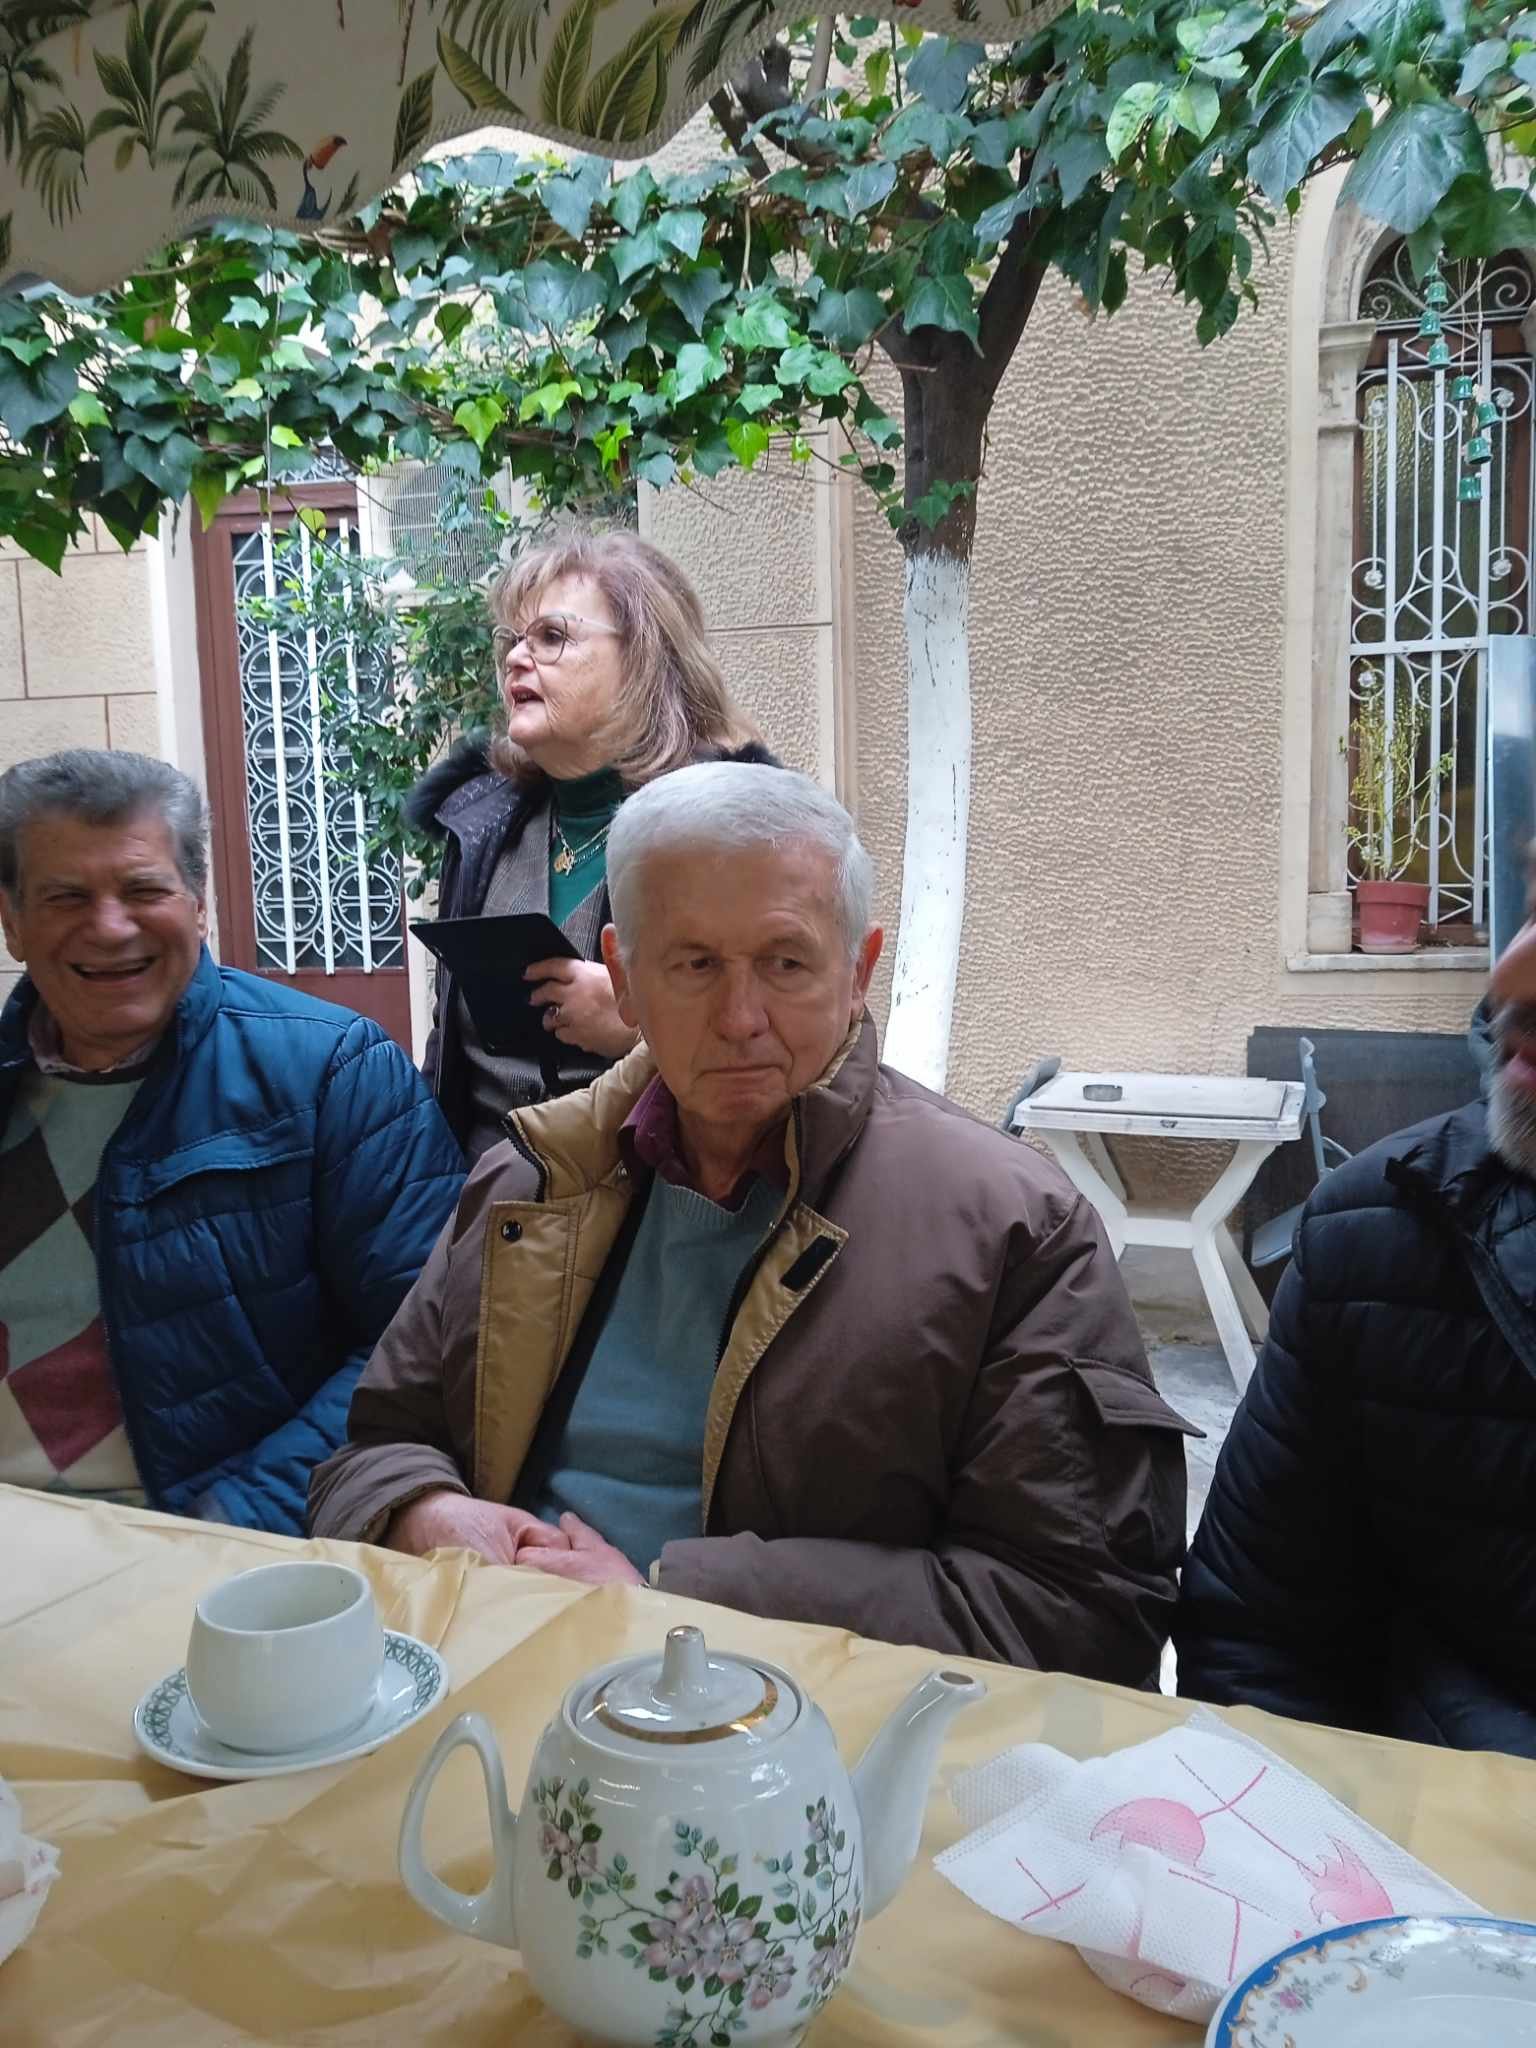 [εικόνες] Η κοπή πίτας στον Σύλλογο Απανταχού Σκιαθιτών στην Αθήνα